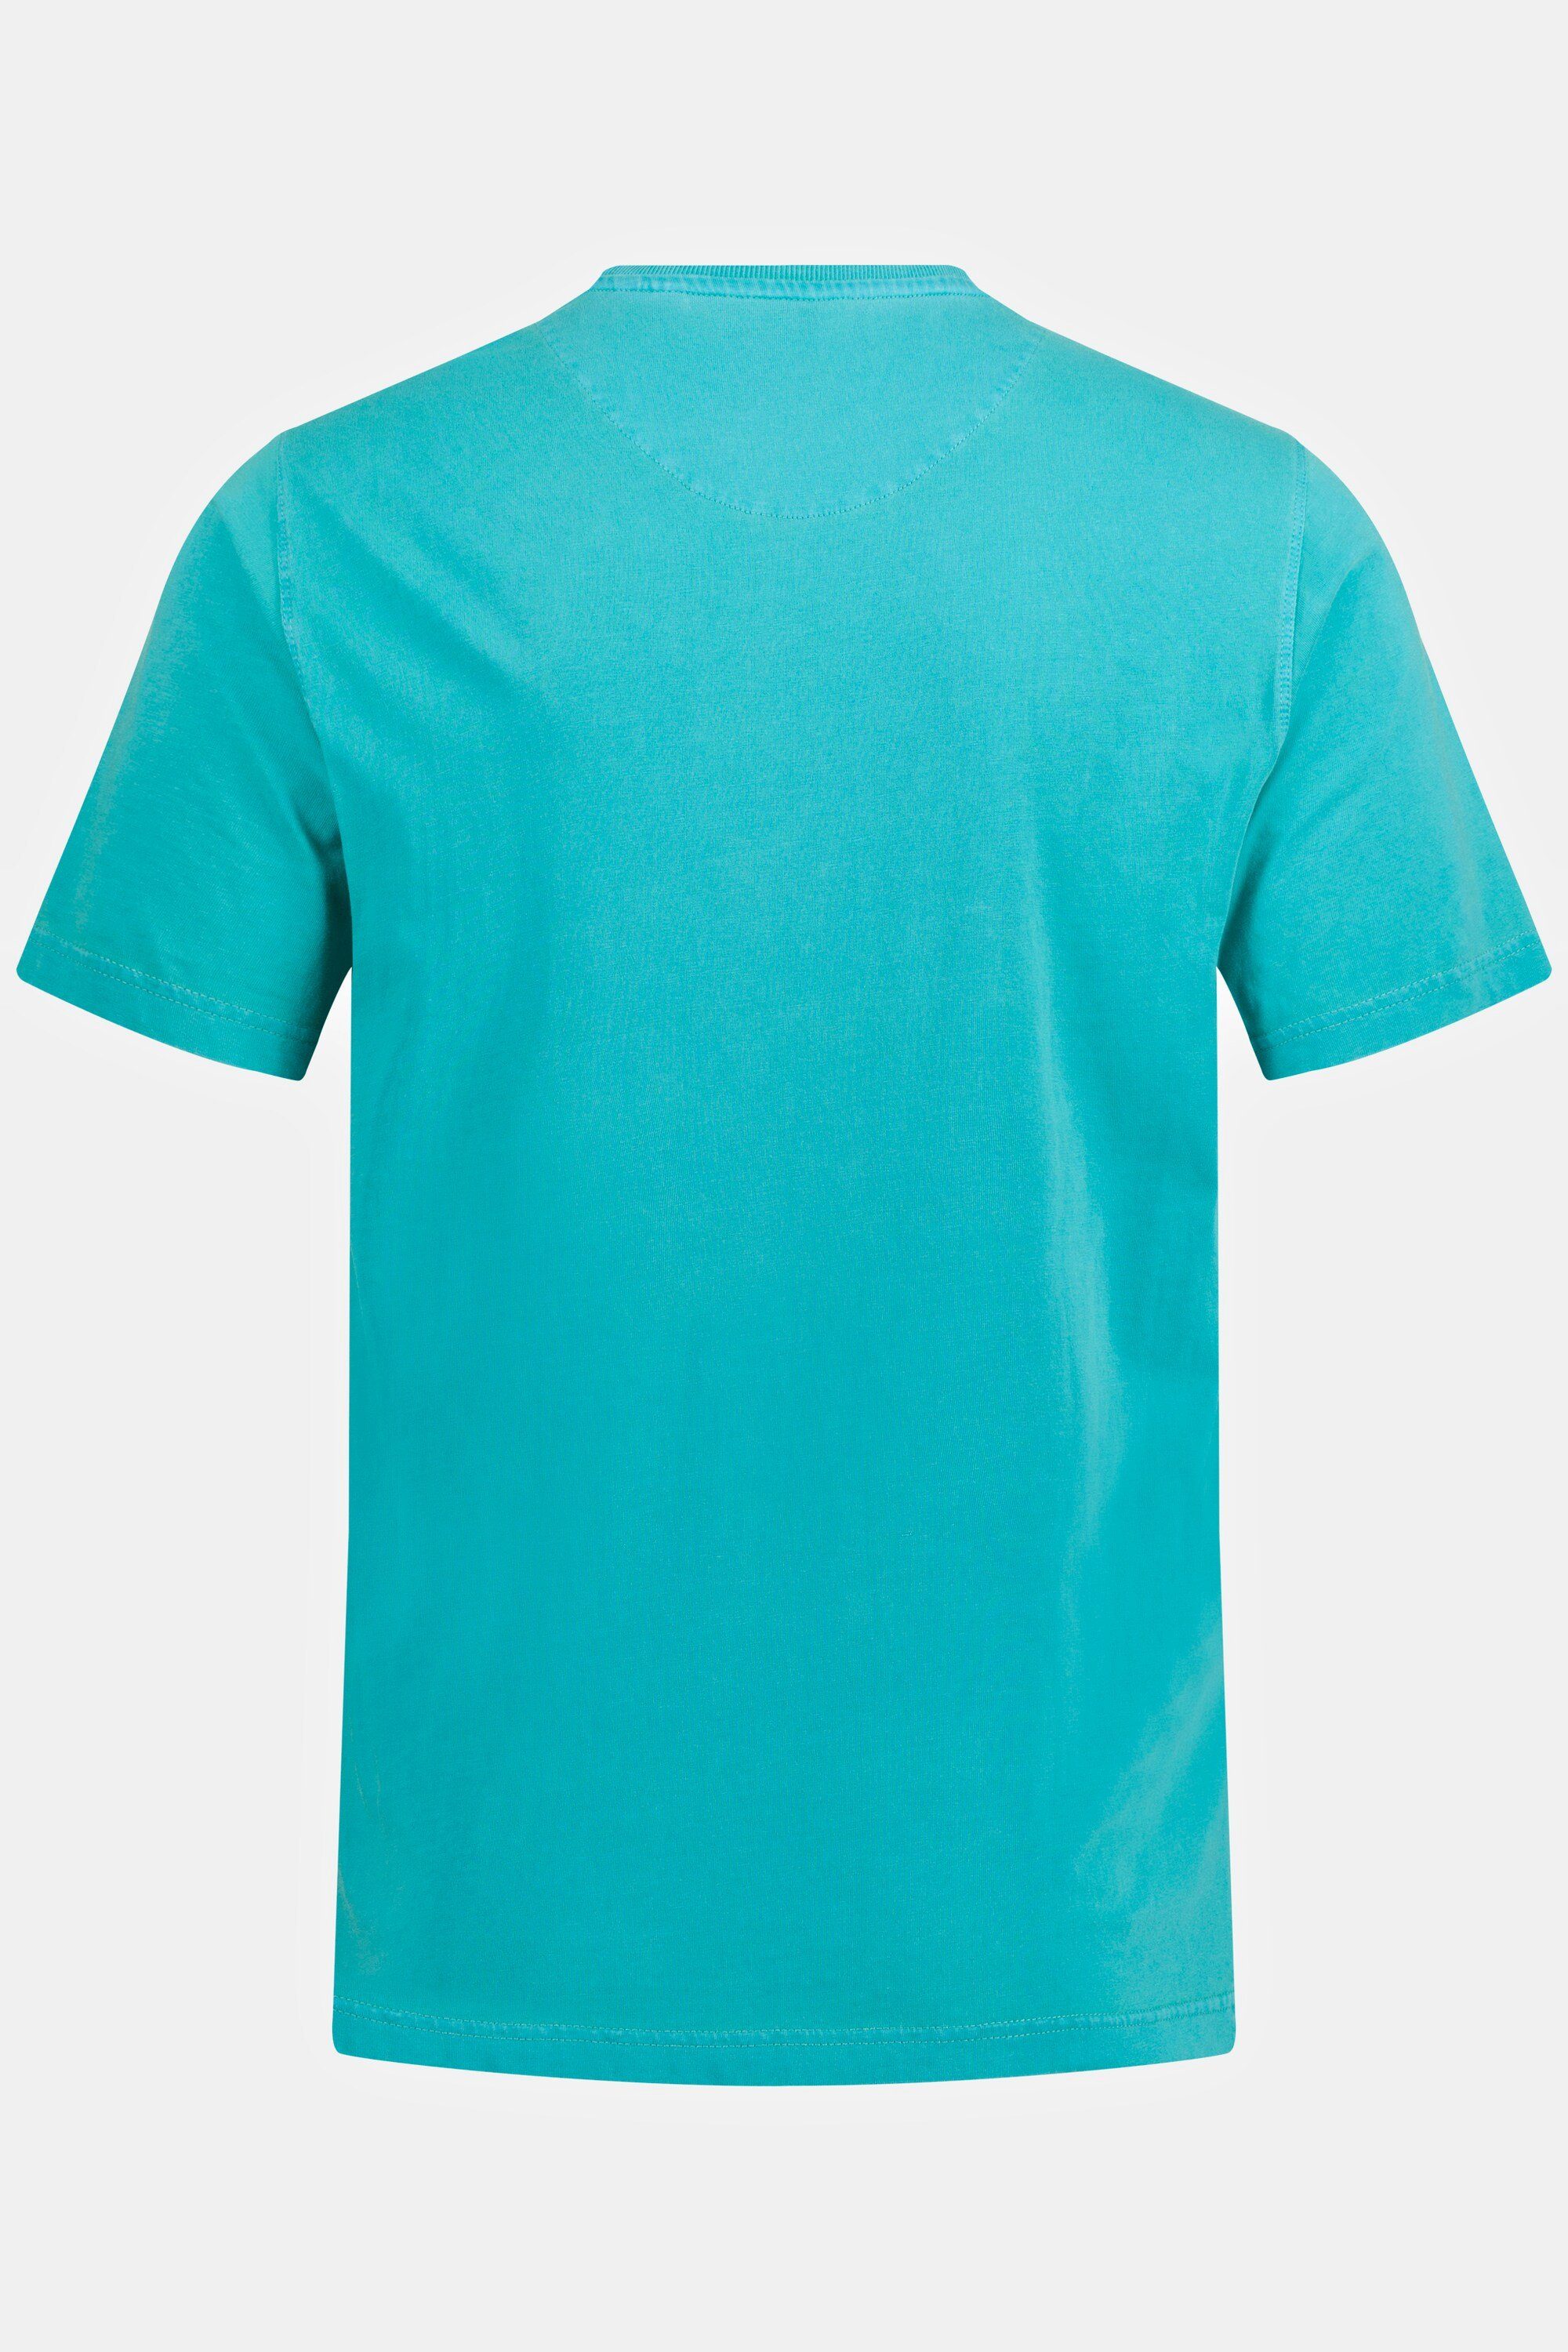 Halbarm T-Shirt JP1880 türkis Rundhals Brusttasche dunkles T-Shirt